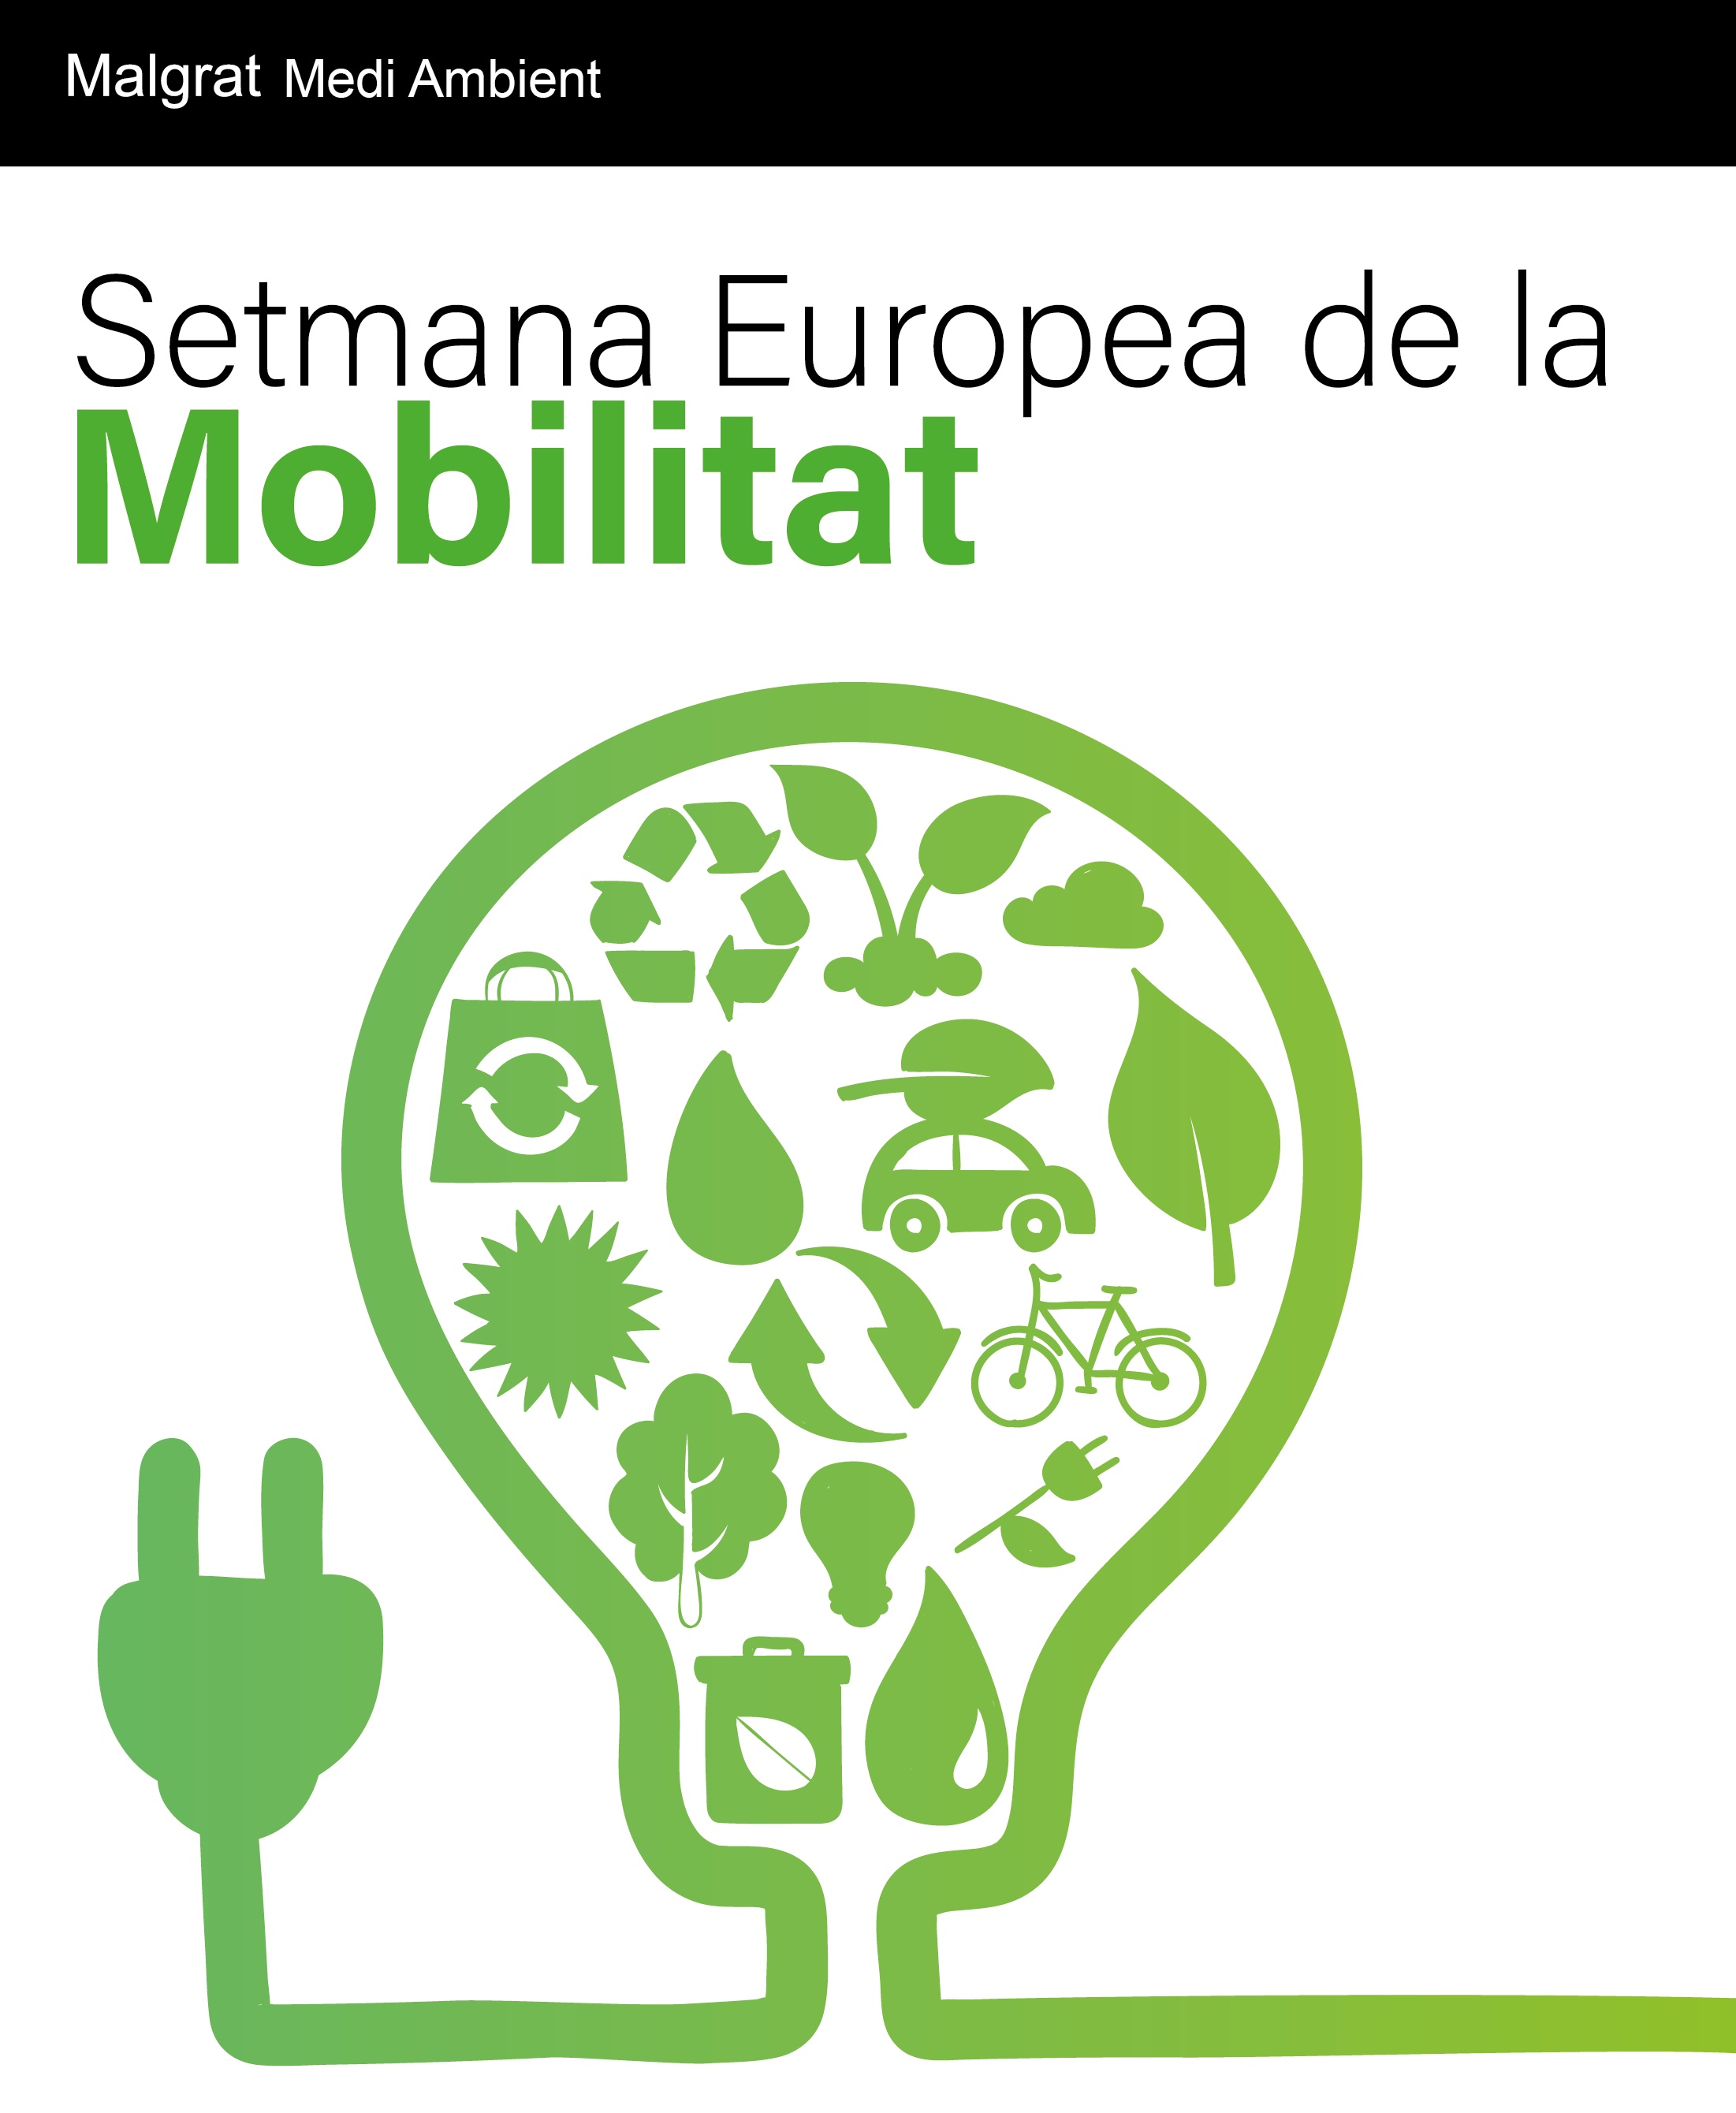 Setmana de la Mobilitat Sostenible i Segura